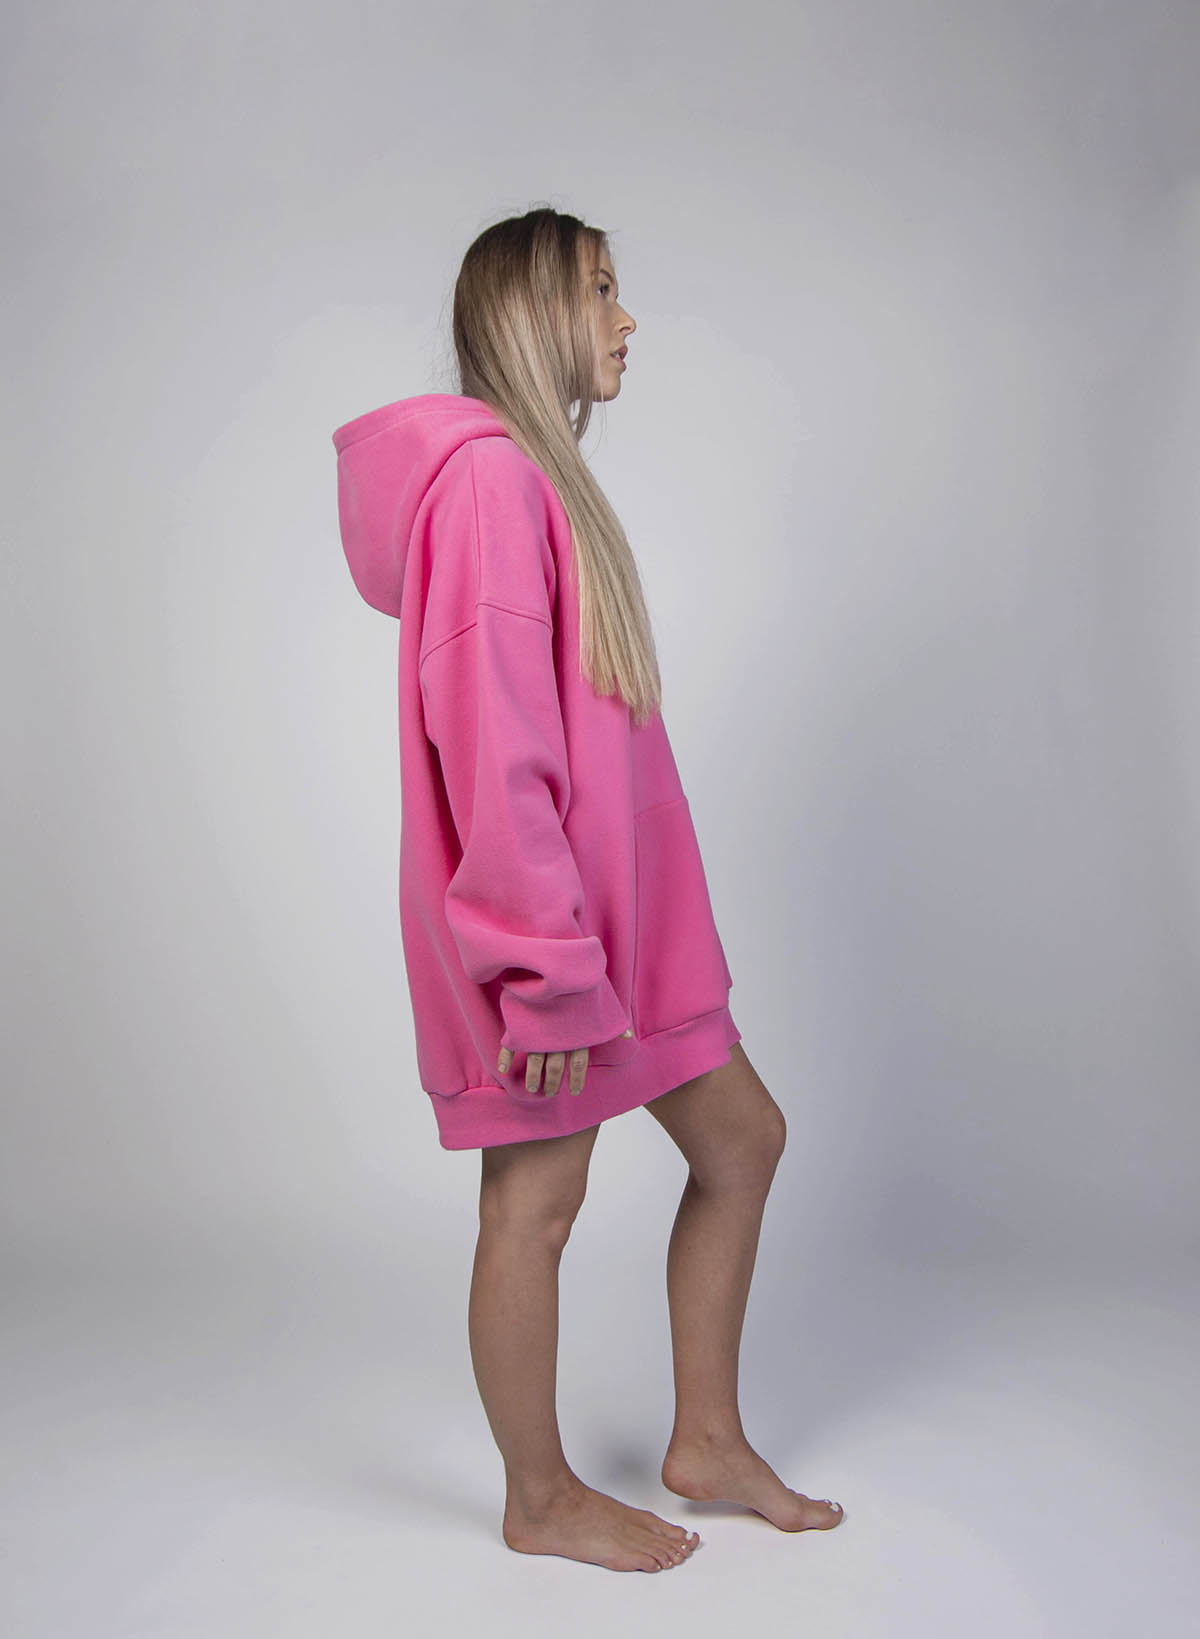 IMGP8801-mod-pink-hoodie